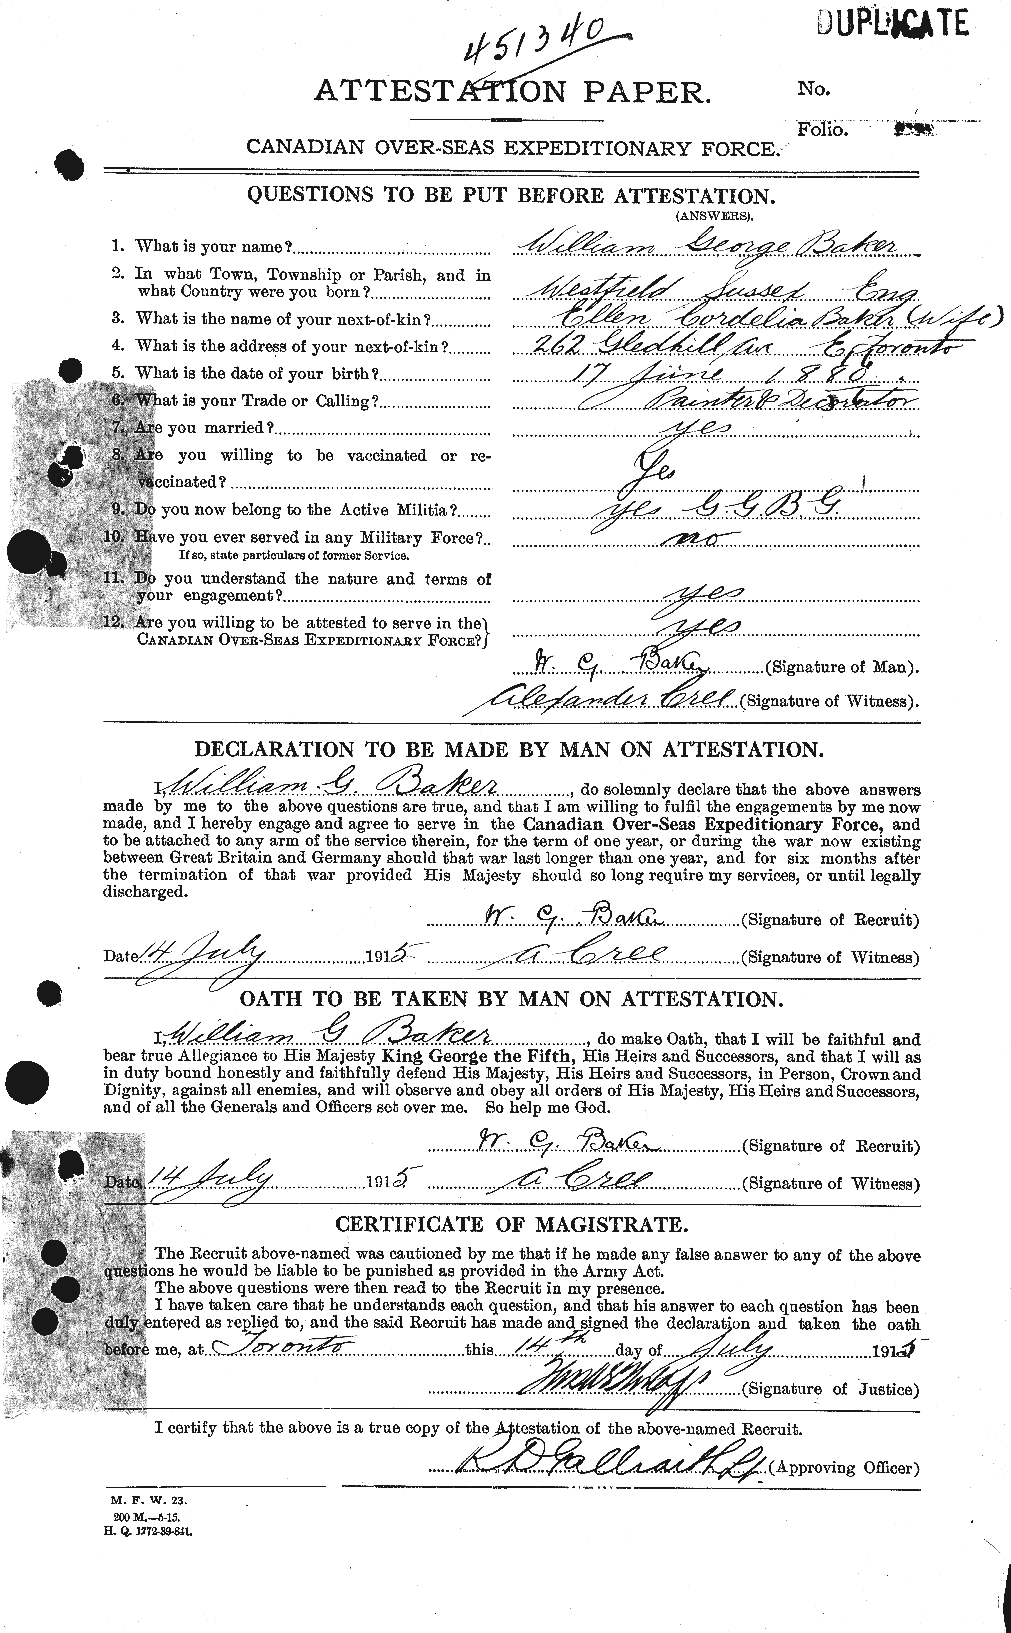 Dossiers du Personnel de la Première Guerre mondiale - CEC 216524a